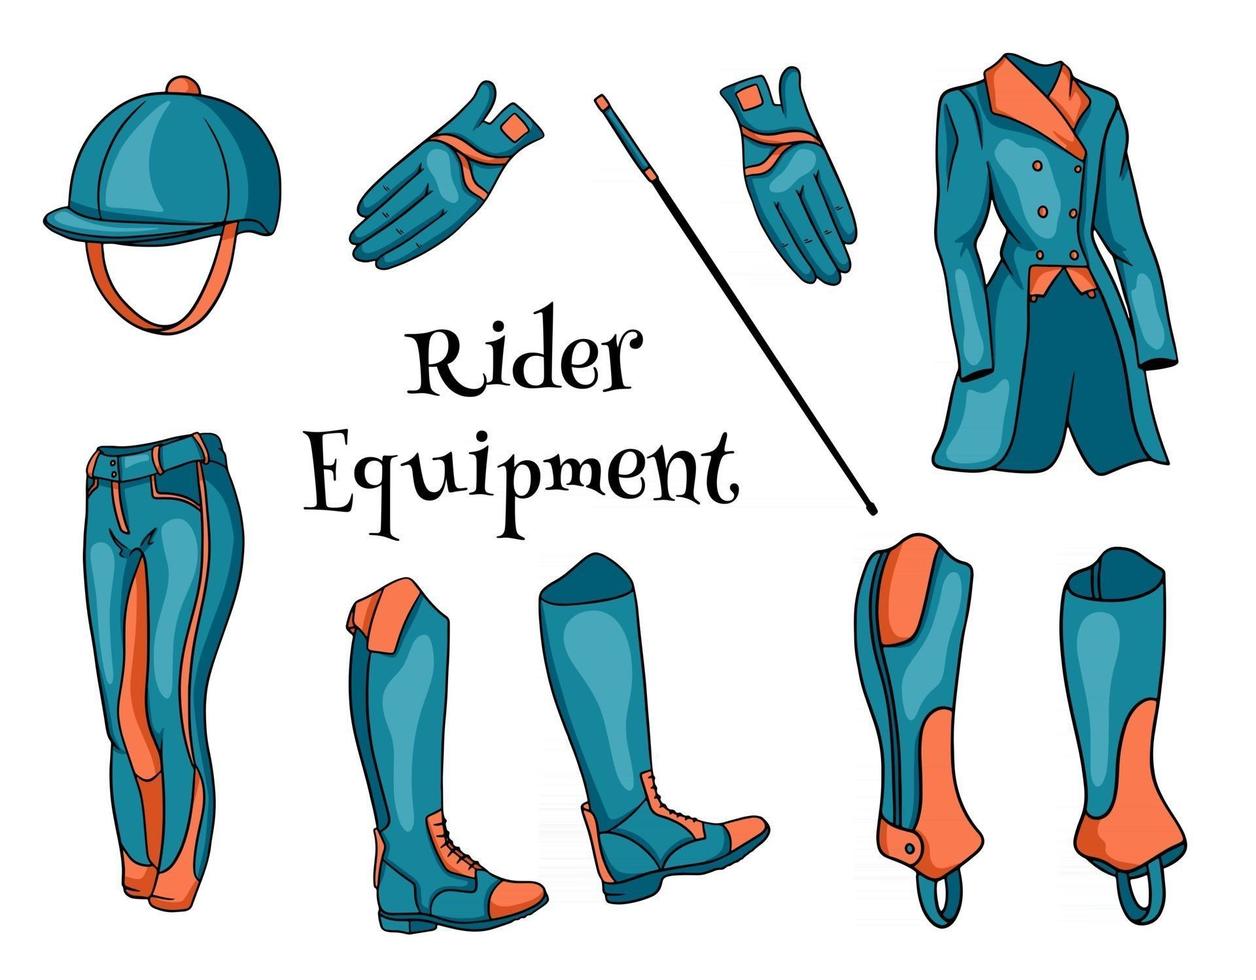 outfit rider un conjunto de ropa para un jockey botas pantalones pedjak látigo casco en estilo de dibujos animados vector